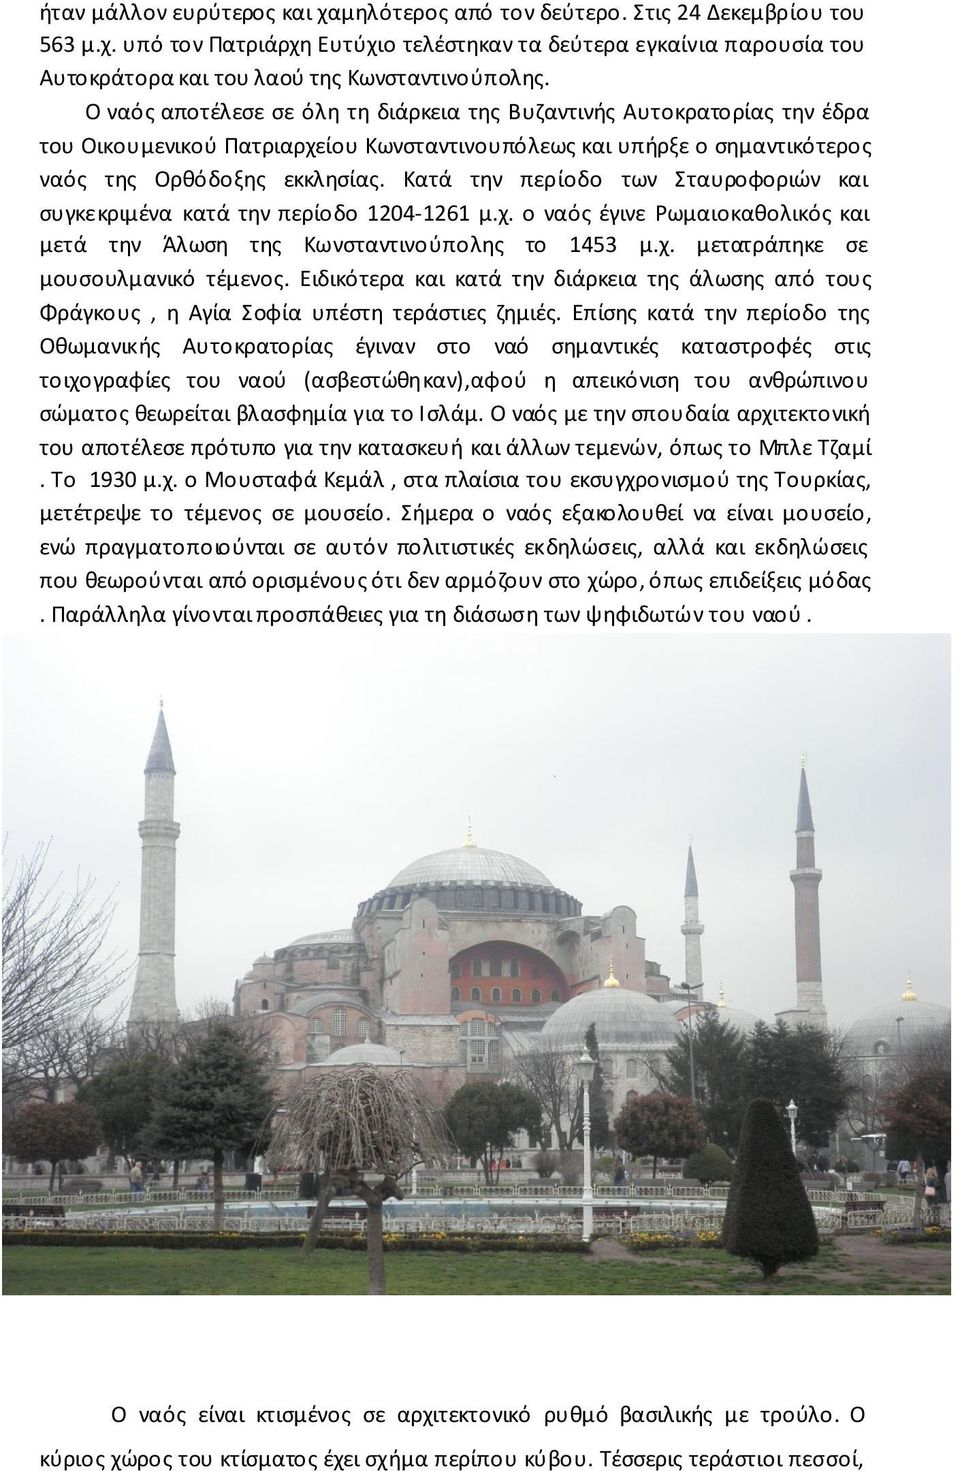 Κατά την περίοδο των Σταυροφοριών και συγκεκριμένα κατά την περίοδο 1204-1261 μ.χ. ο ναός έγινε Ρωμαιοκαθολικός και μετά την Άλωση της Κωνσταντινούπολης το 1453 μ.χ. μετατράπηκε σε μουσουλμανικό τέμενος.